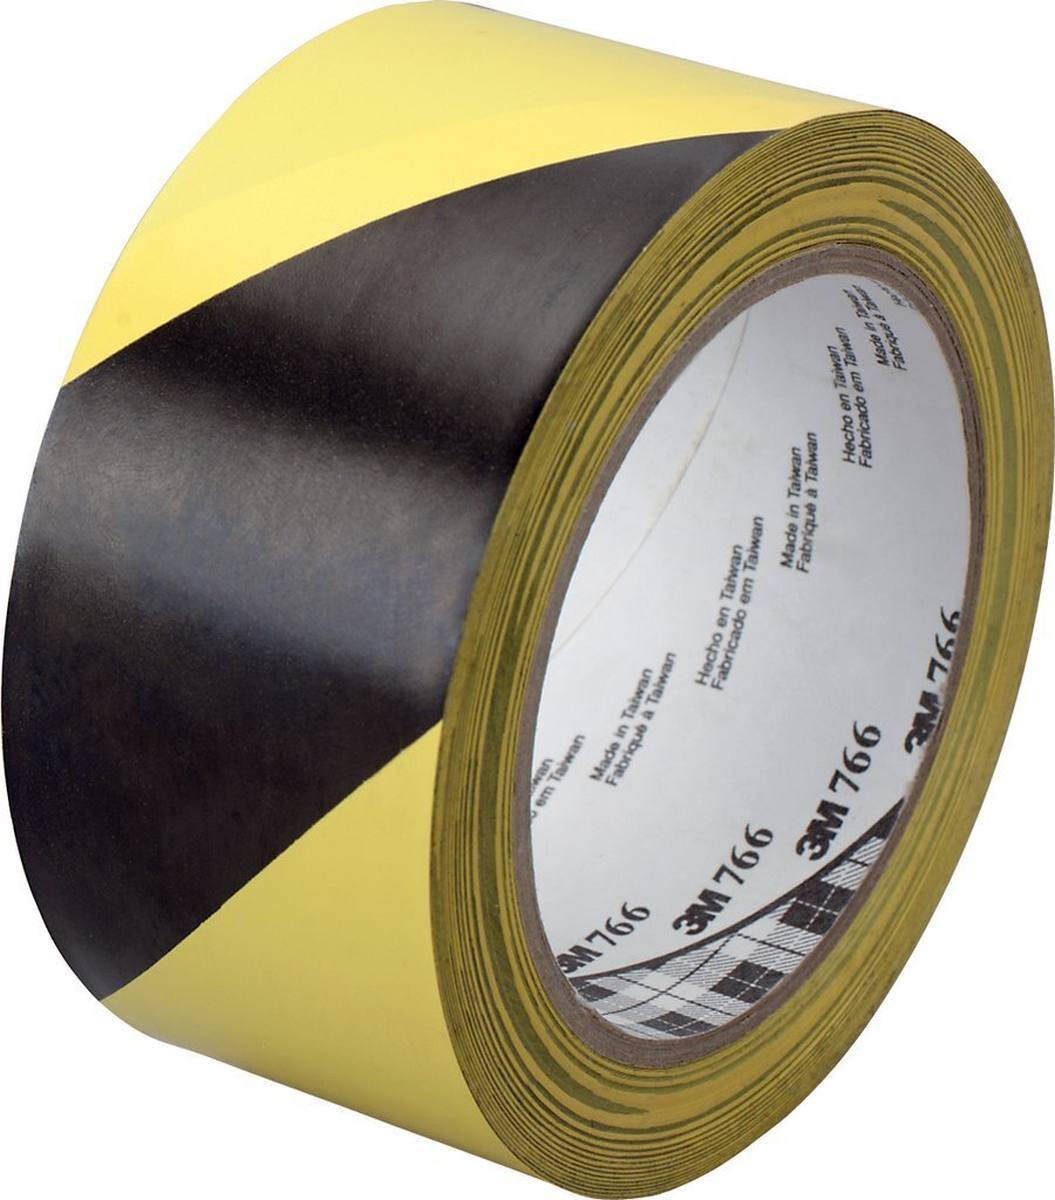 3M Scotch Allzweck-Weich-PVC-Tape 766i 50mmx33m schwarz/gelb